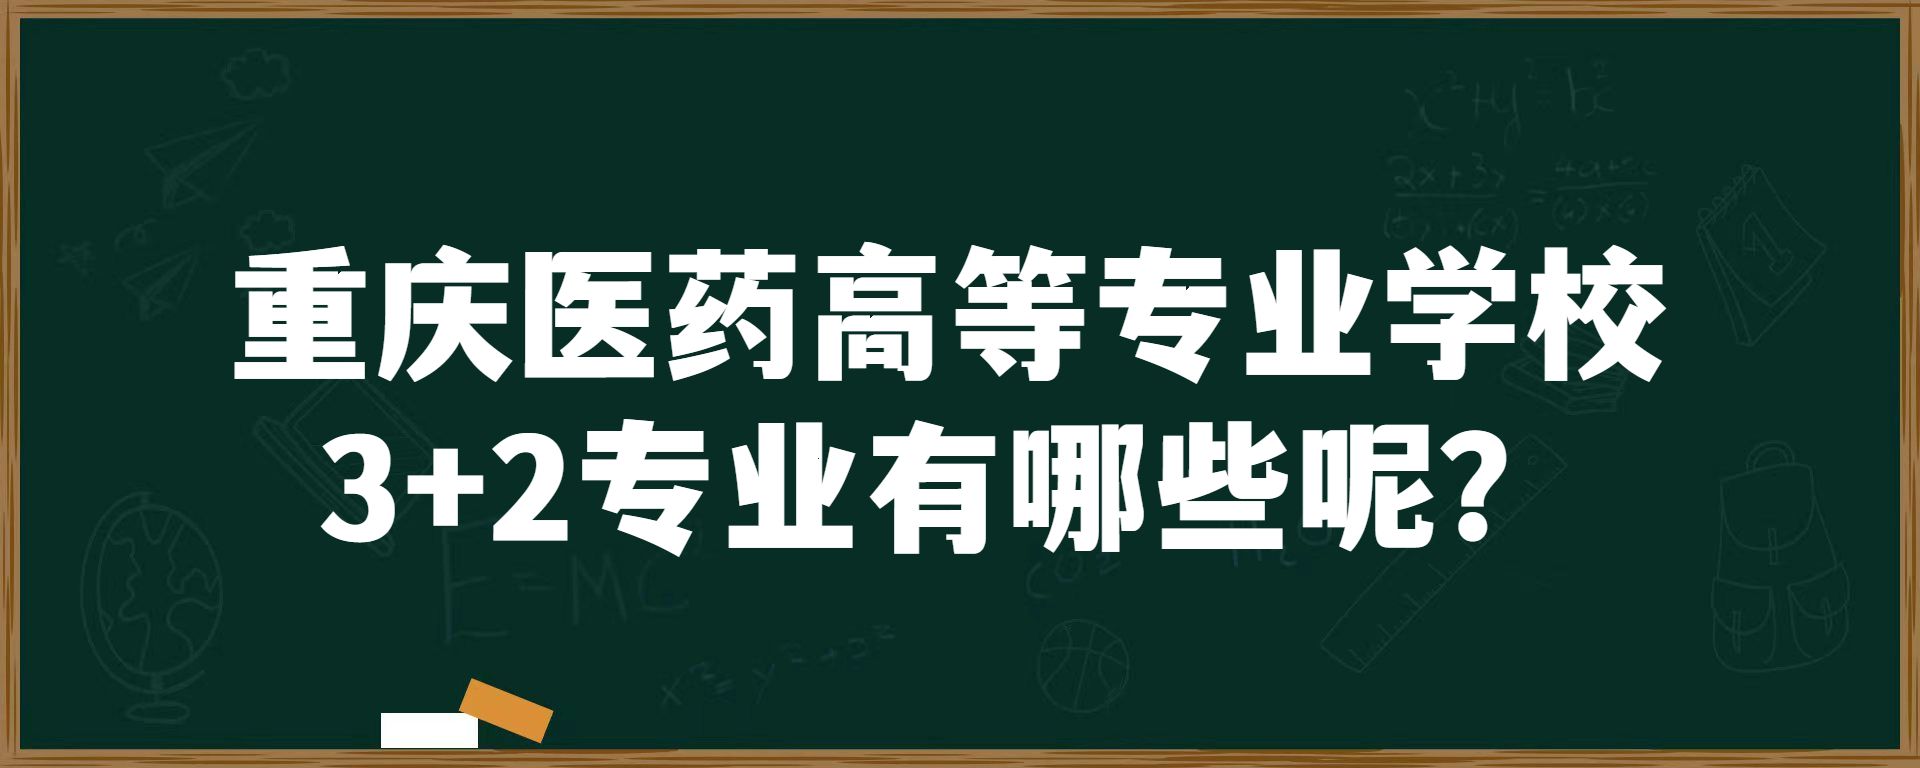 重庆医药高等专业学校3+2专业有哪些呢？